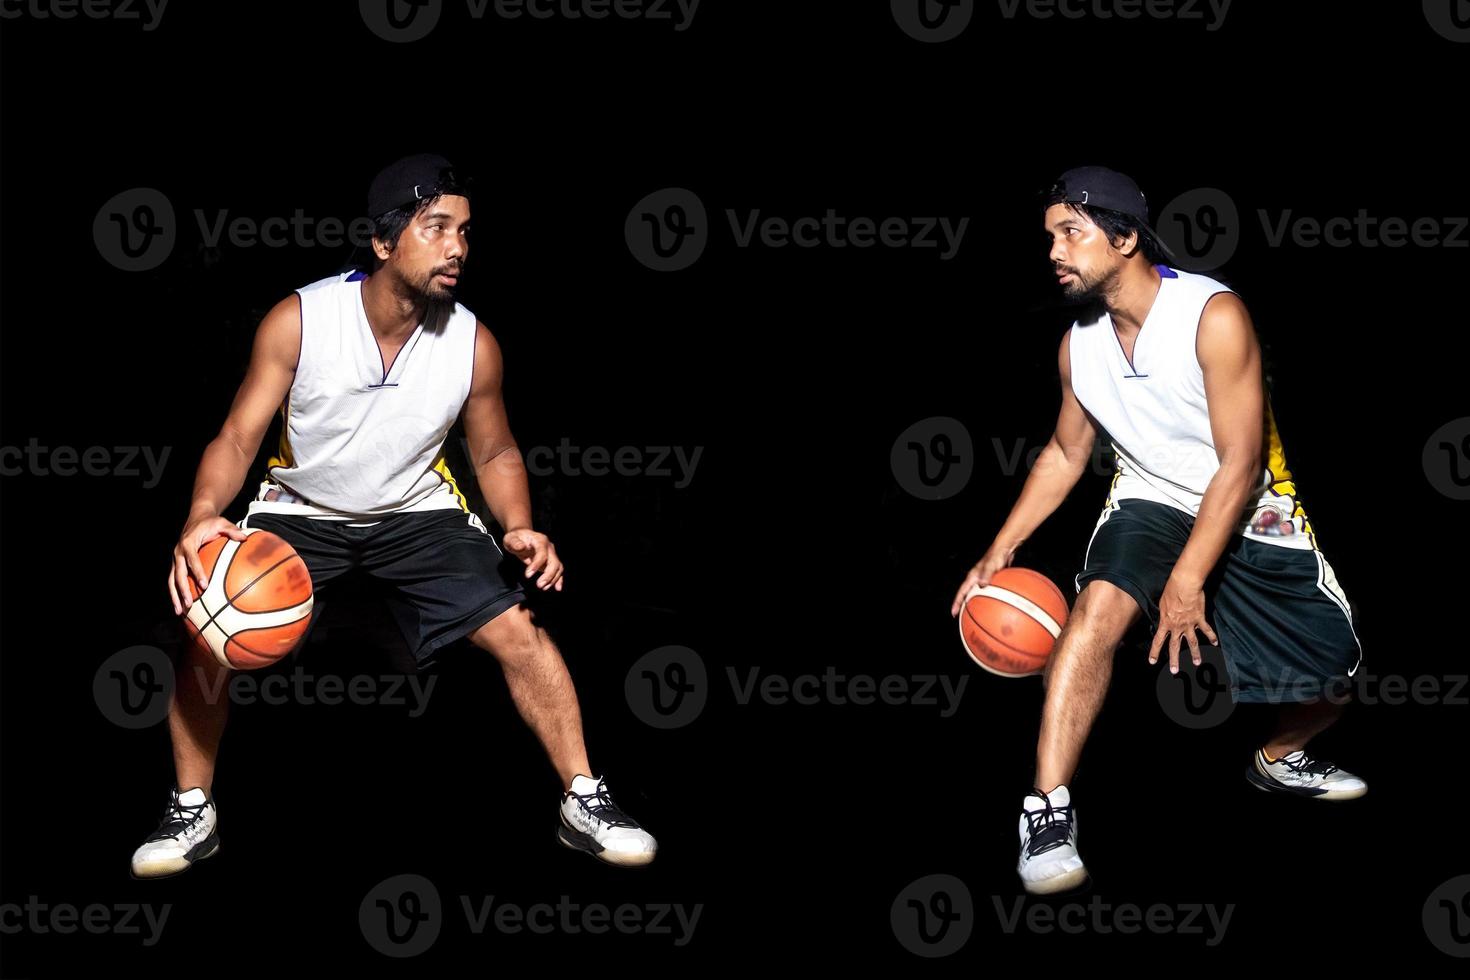 gebaar van Aziatische basketbalspeler dribbelen op zwarte achtergrond. basketbalconcept in Azië foto